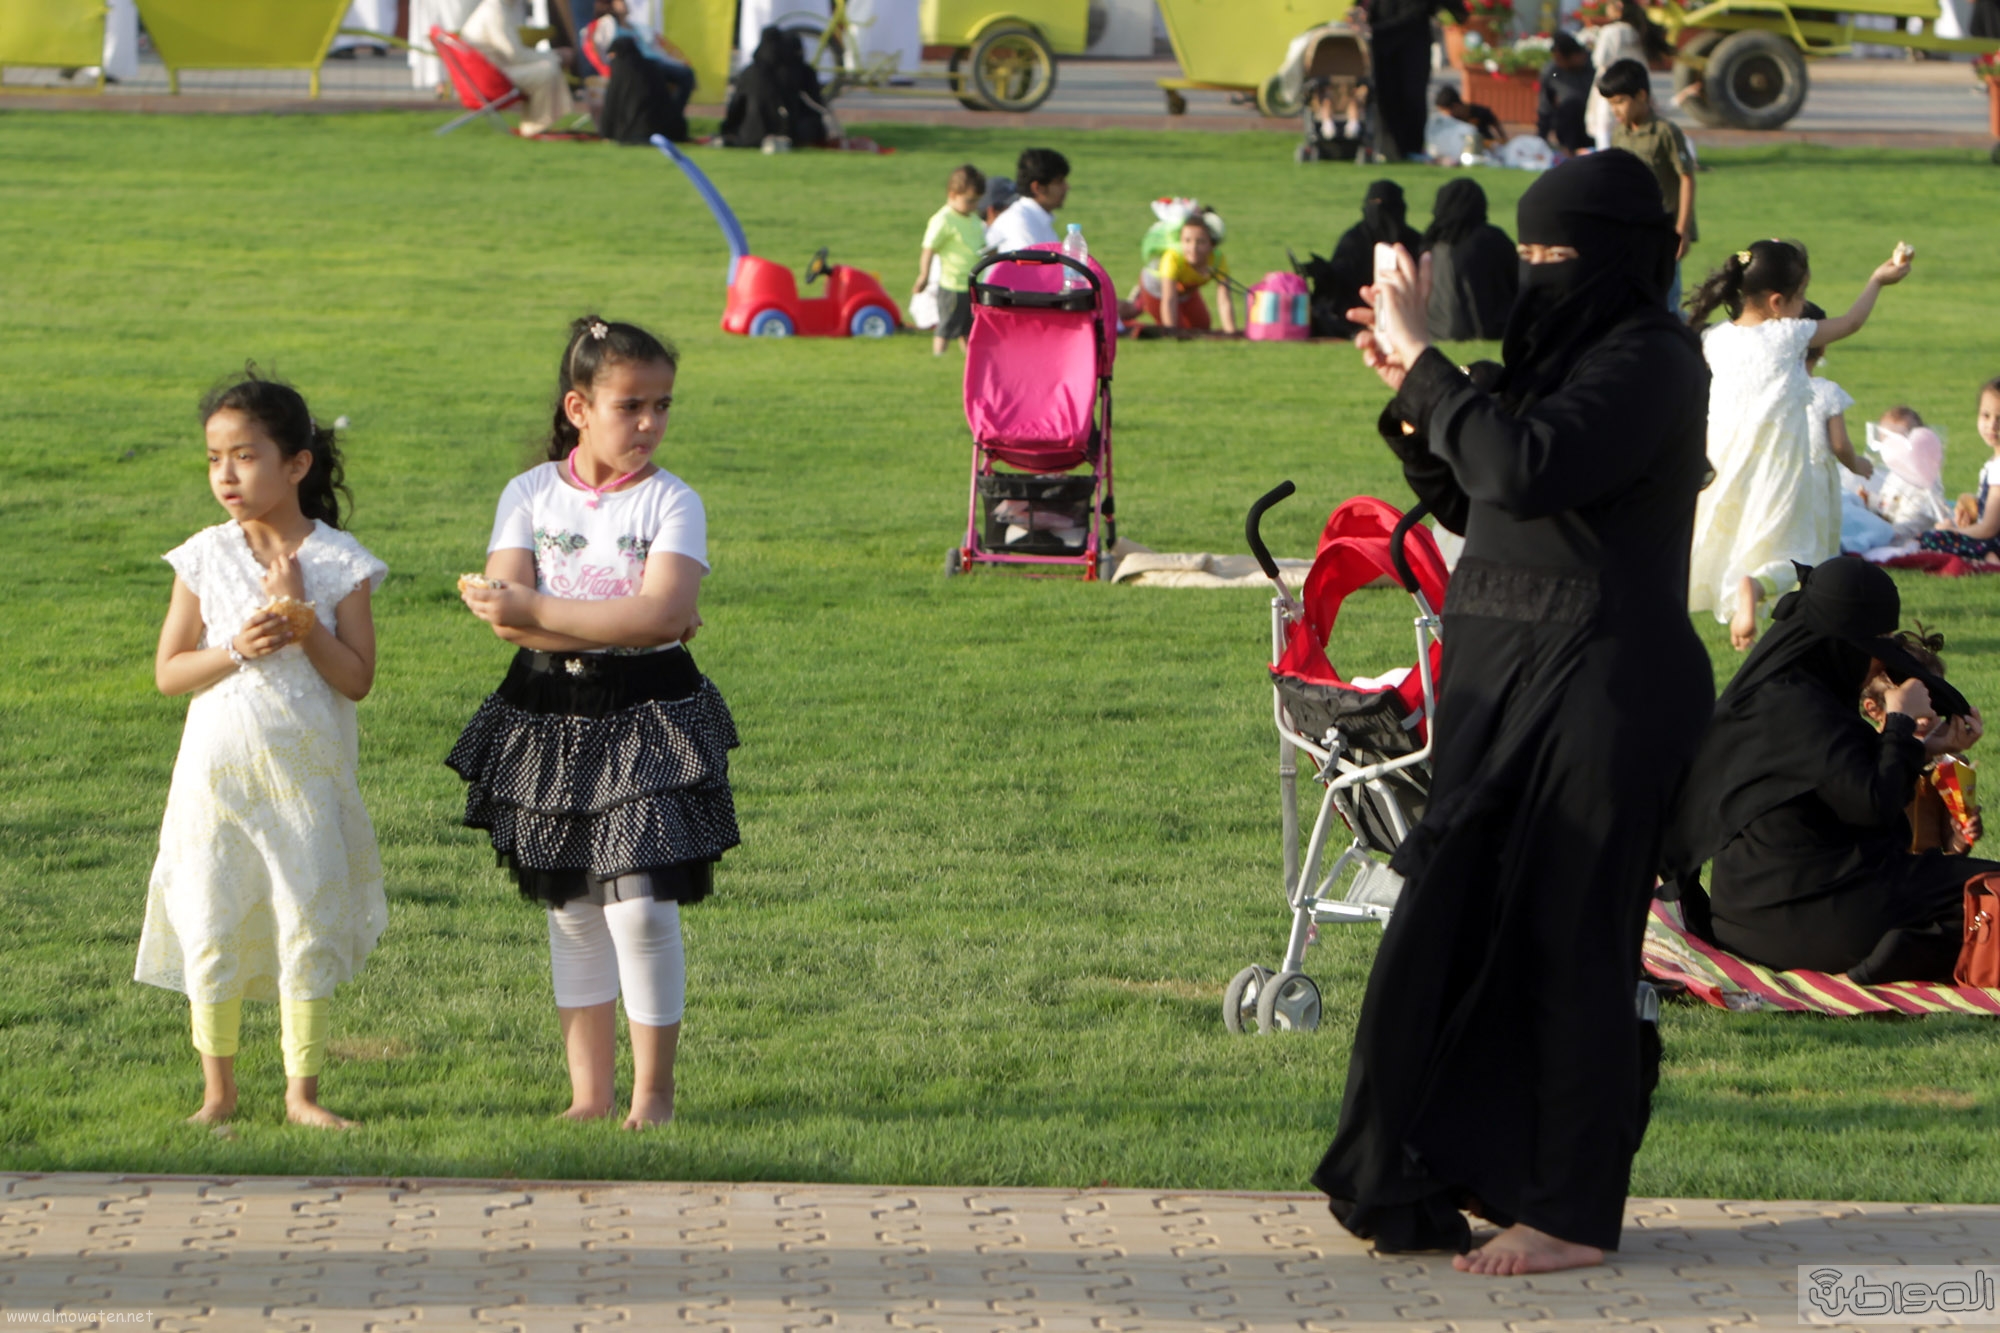 بالصور .. هذا ما رصدته عدسة "المواطن" من مهرجان ربيع الرياض